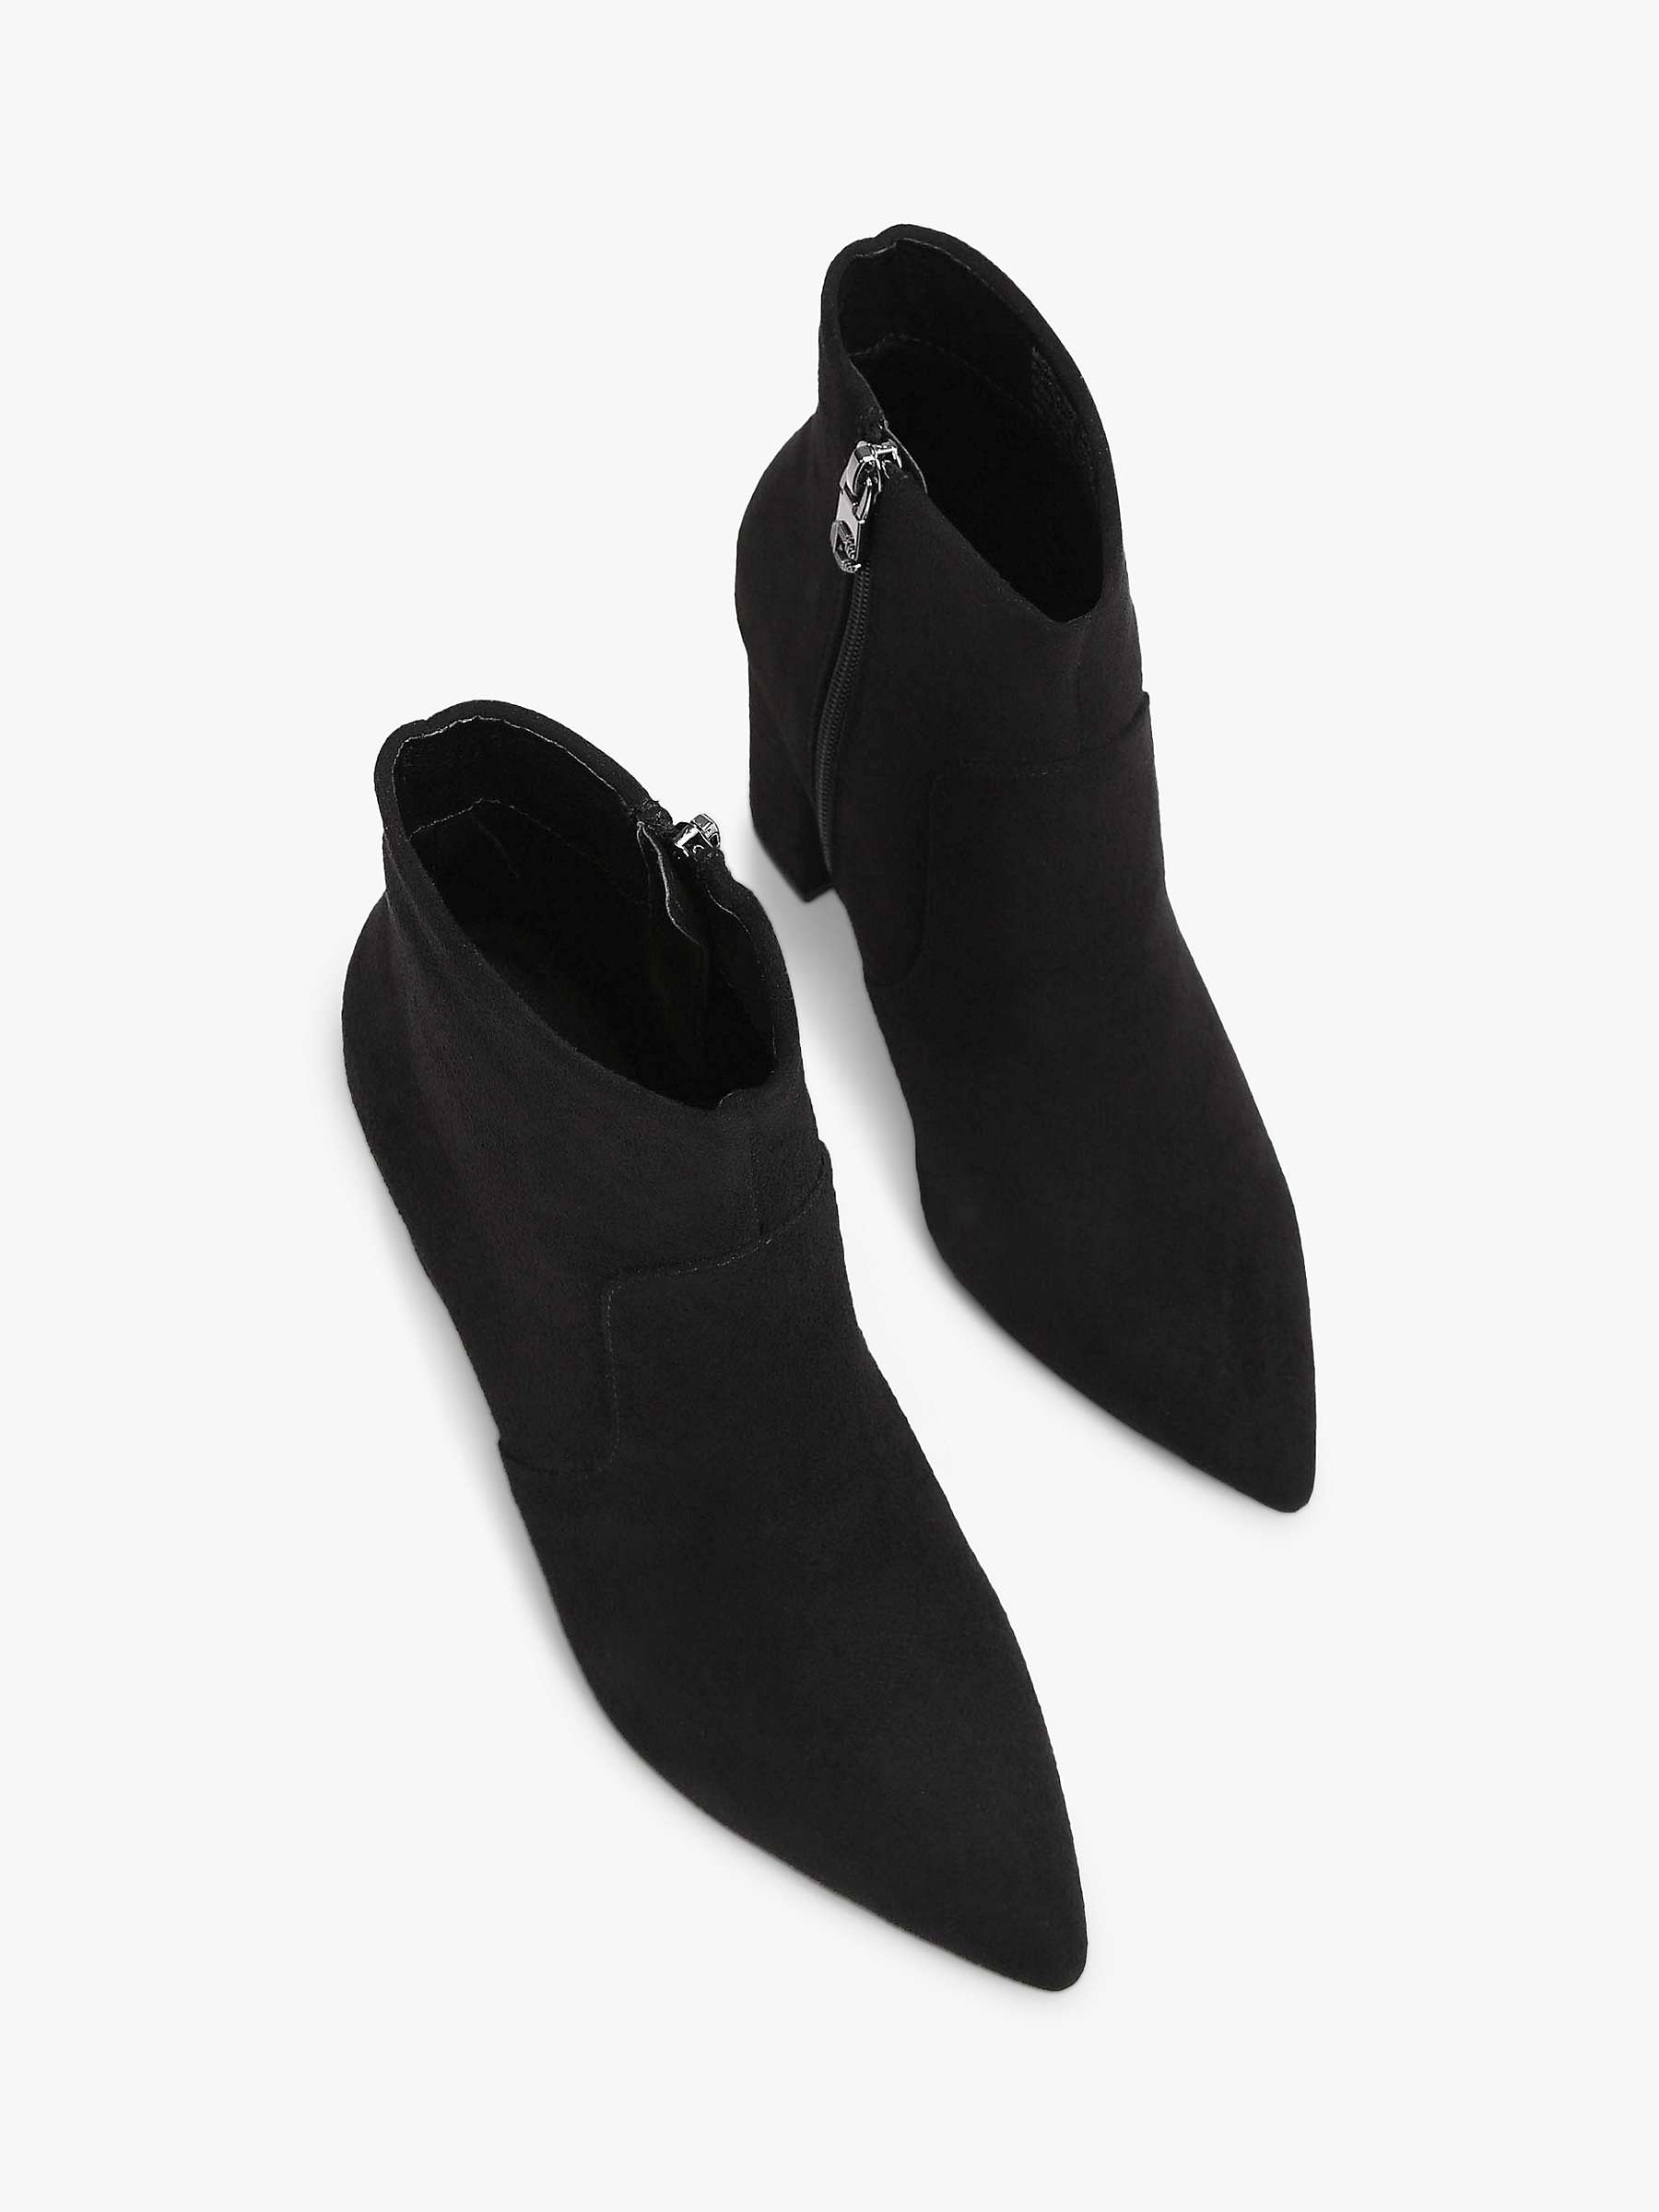 Buy Carvela Shone High Block Heel Ankle Boots, Black Online at johnlewis.com